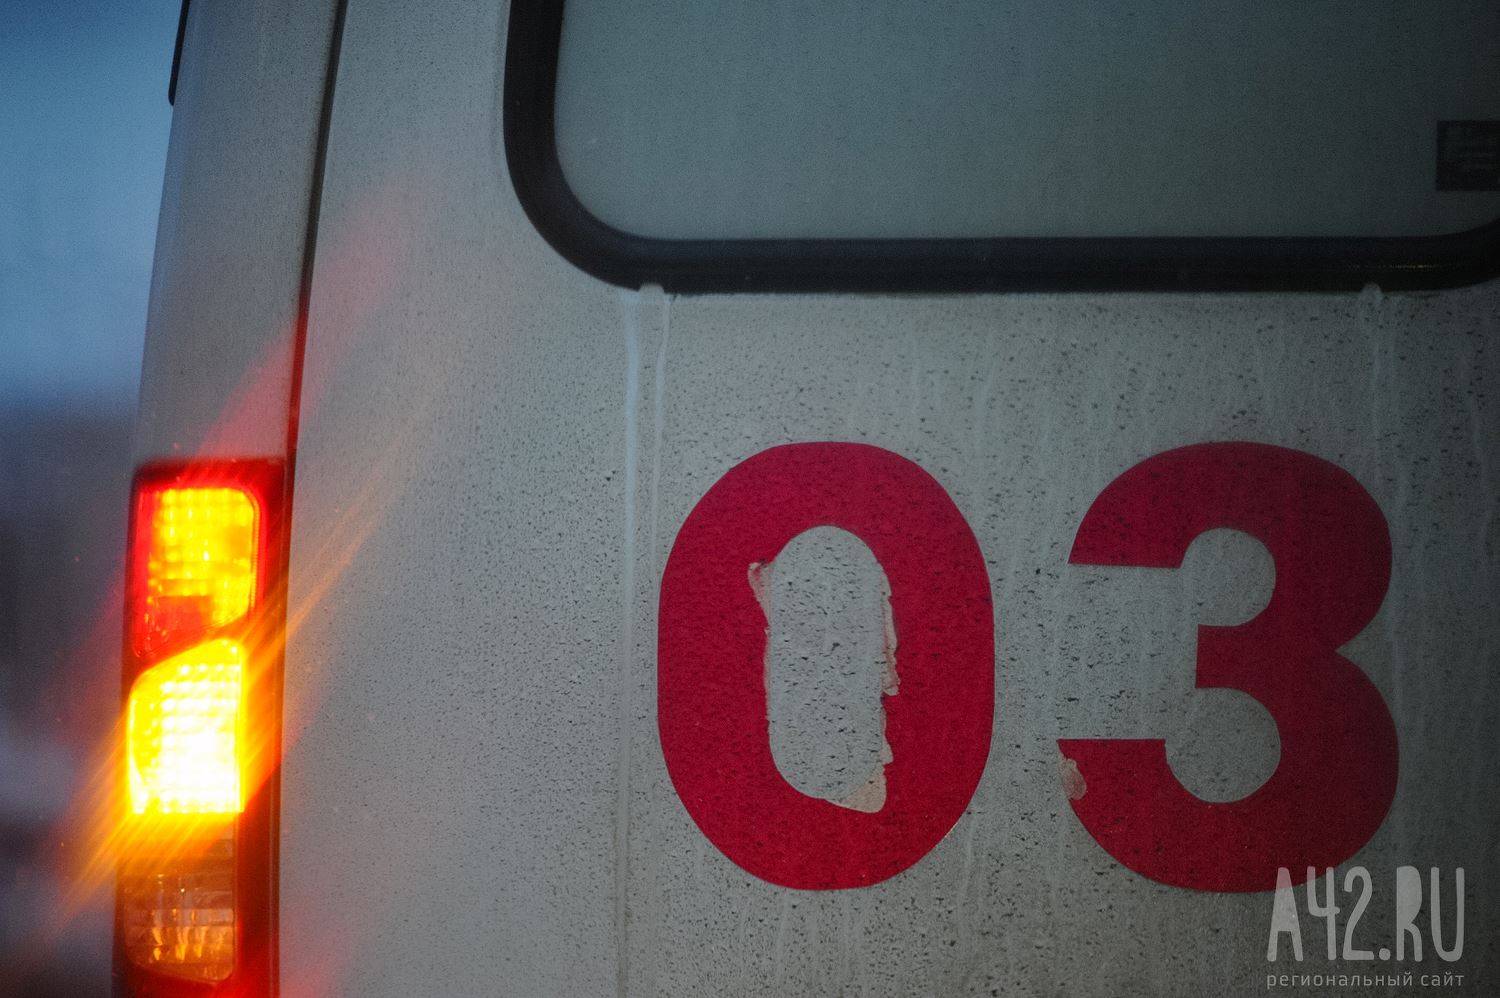 Стали известны подробности ДТП на оживлённом перекрёстке в Кемерове: есть пострадавшие